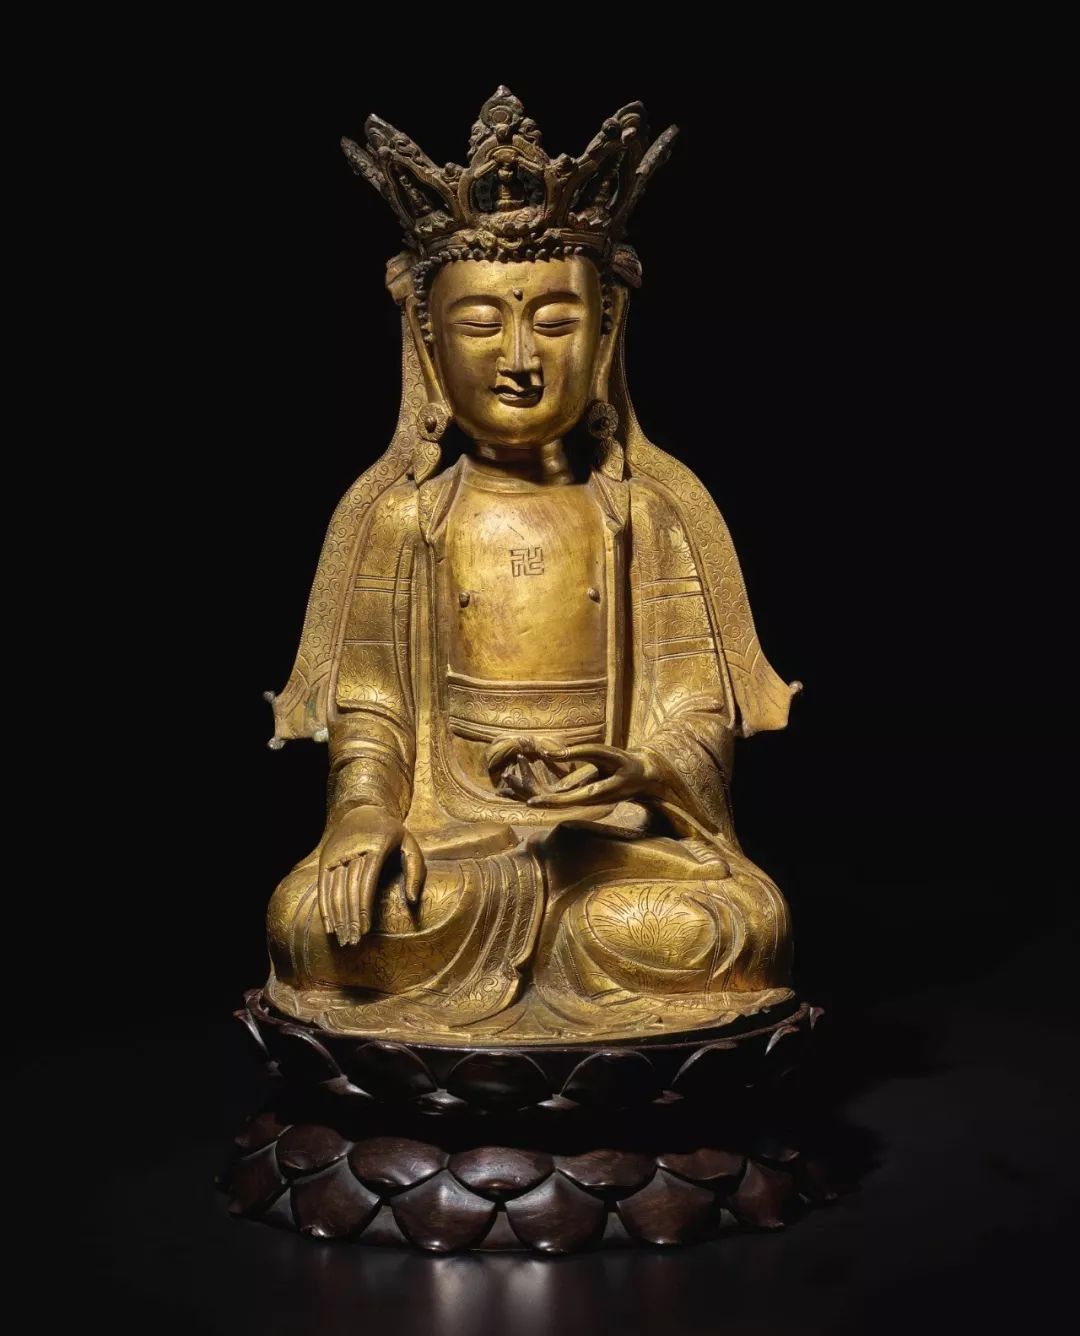 鸿禧美术馆收藏描述:观本像所饰五方佛冠及手印,当为地藏菩萨